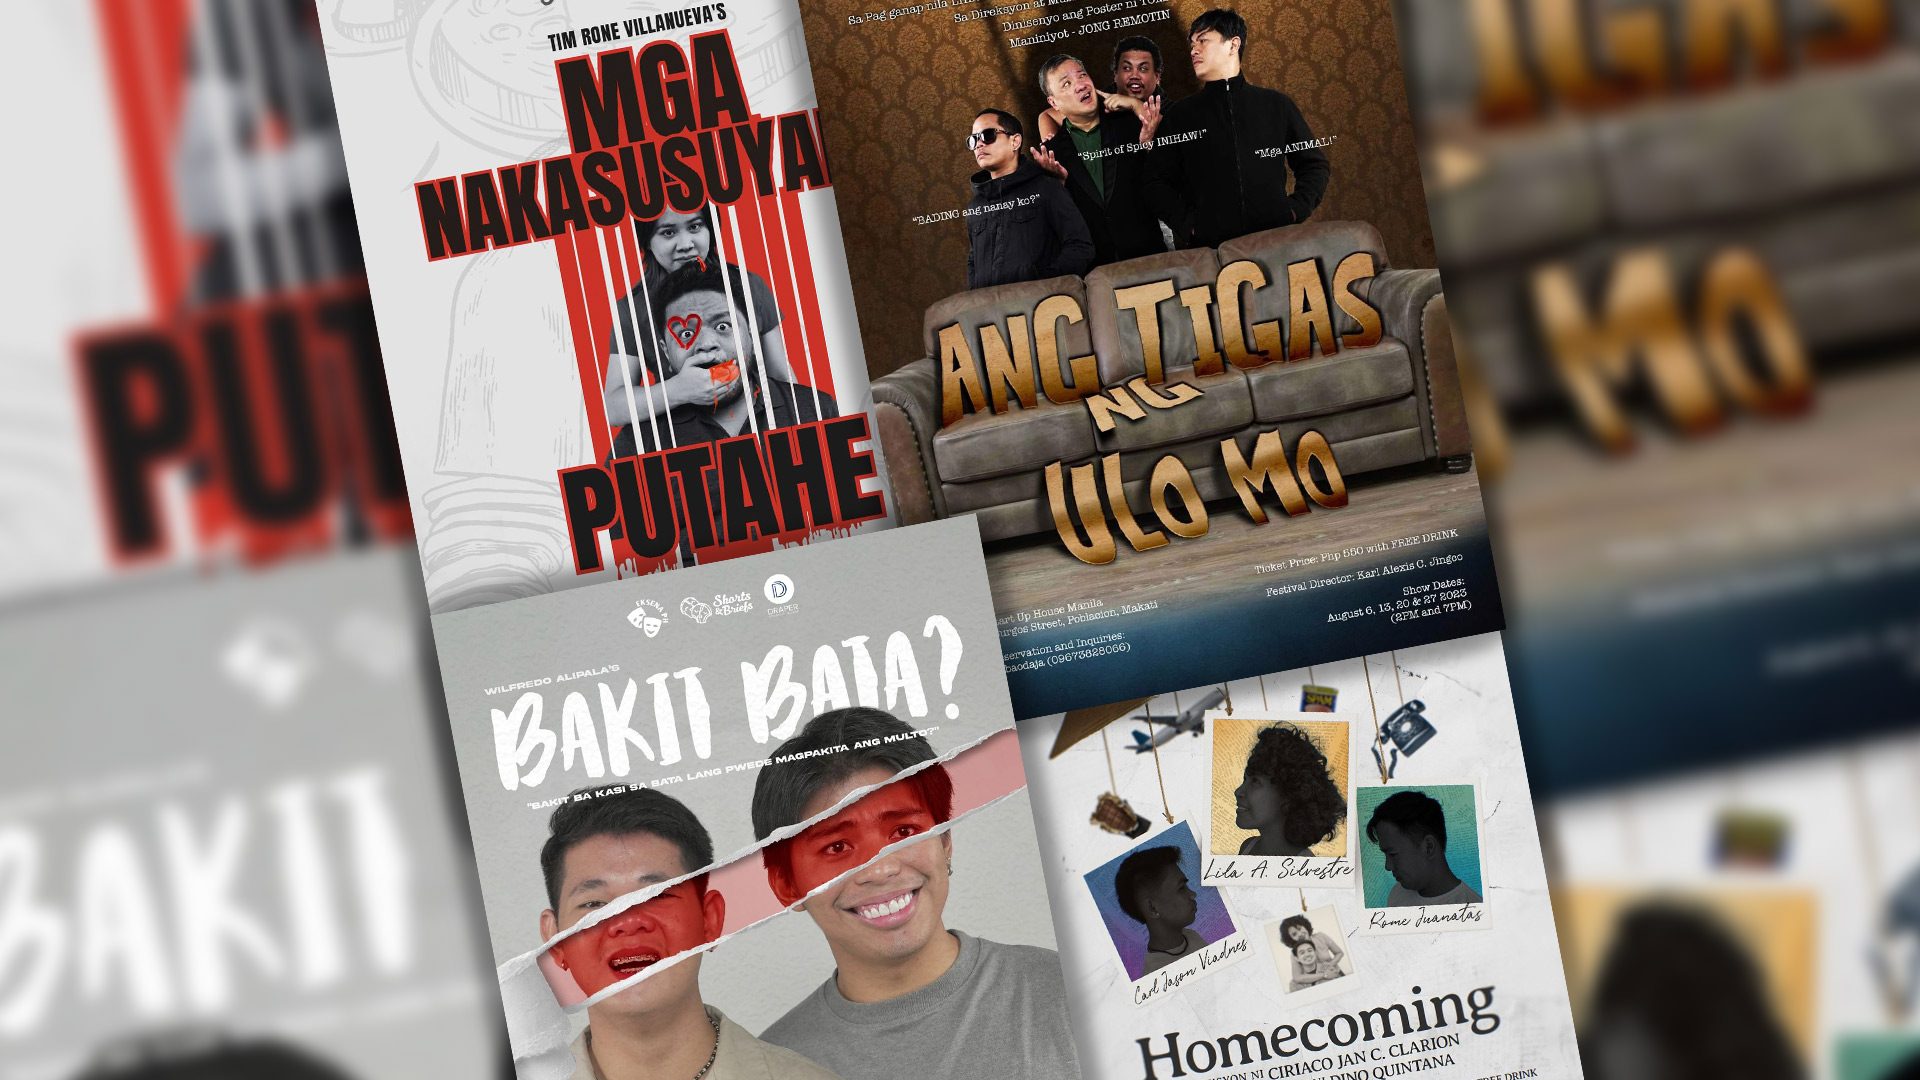 REVIEW: Shorts and Briefs’ ‘Ang Tigas ng Ulo Mo,’ ‘Bakit Bata,’ ‘Homecoming,’ ‘Mga Nakasusuyang Putahe’